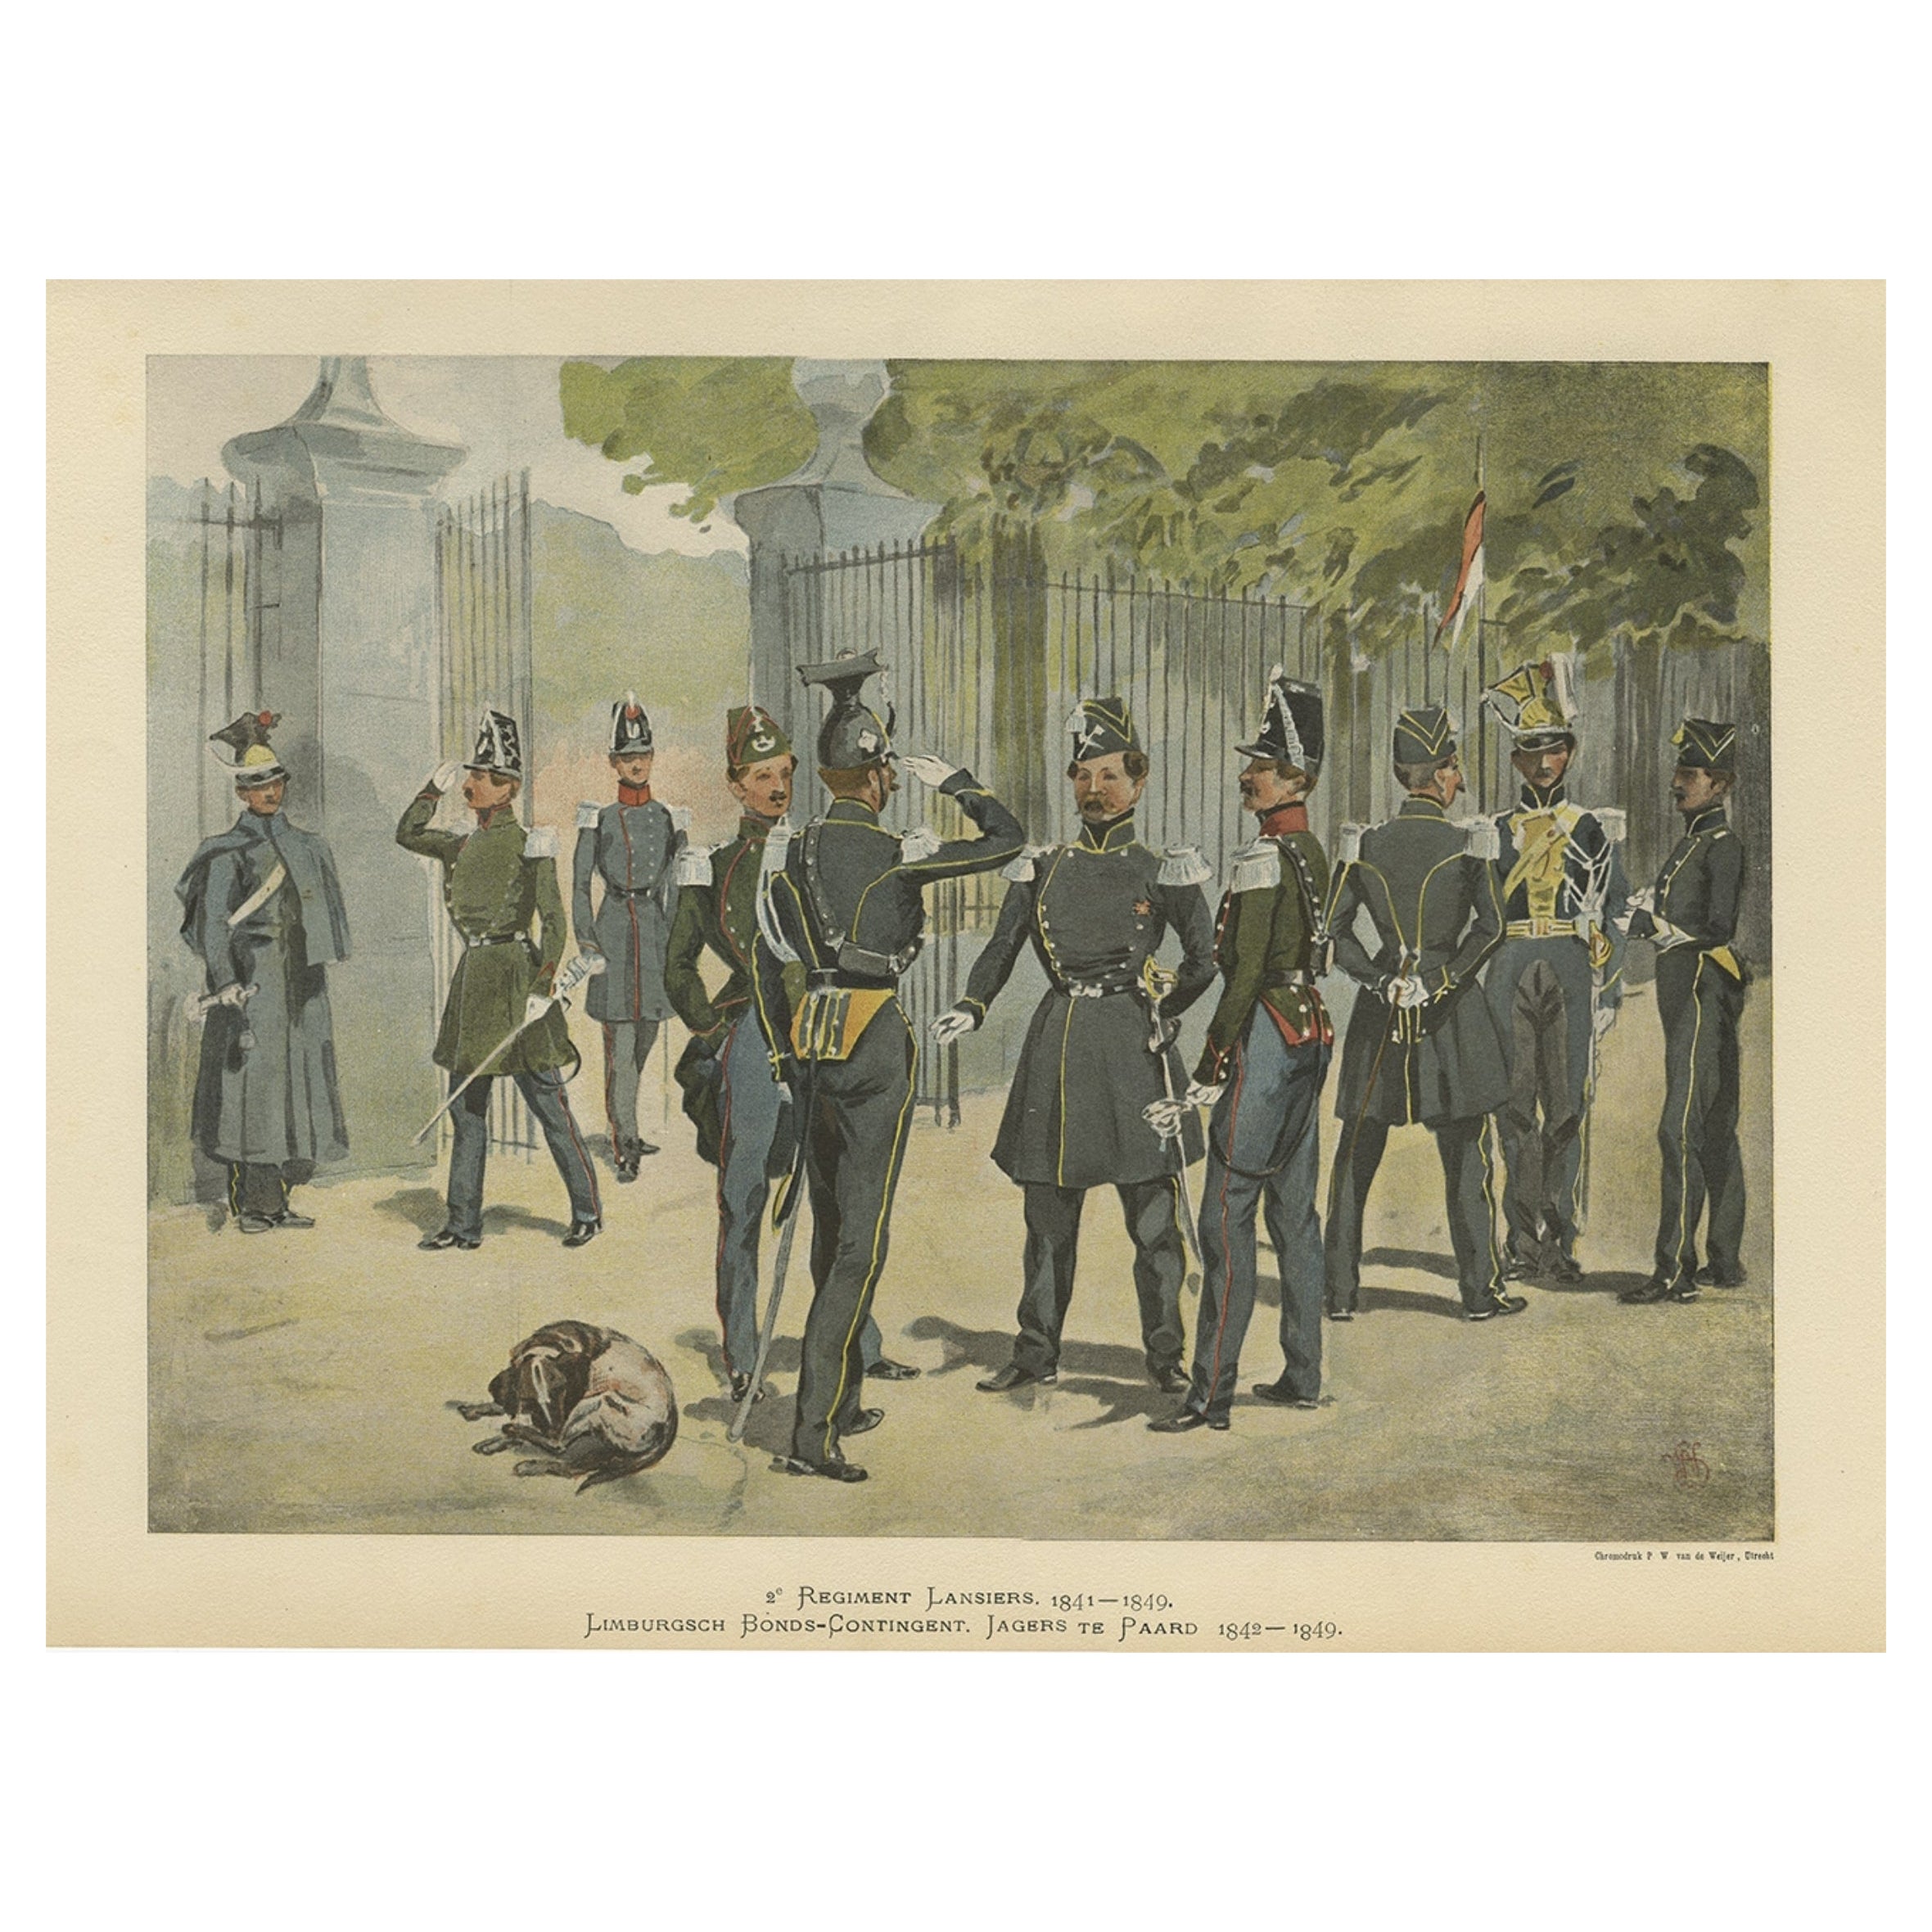 La cavalerie de l'armée néerlandaise-belge 1841-1849, publiée en 1900